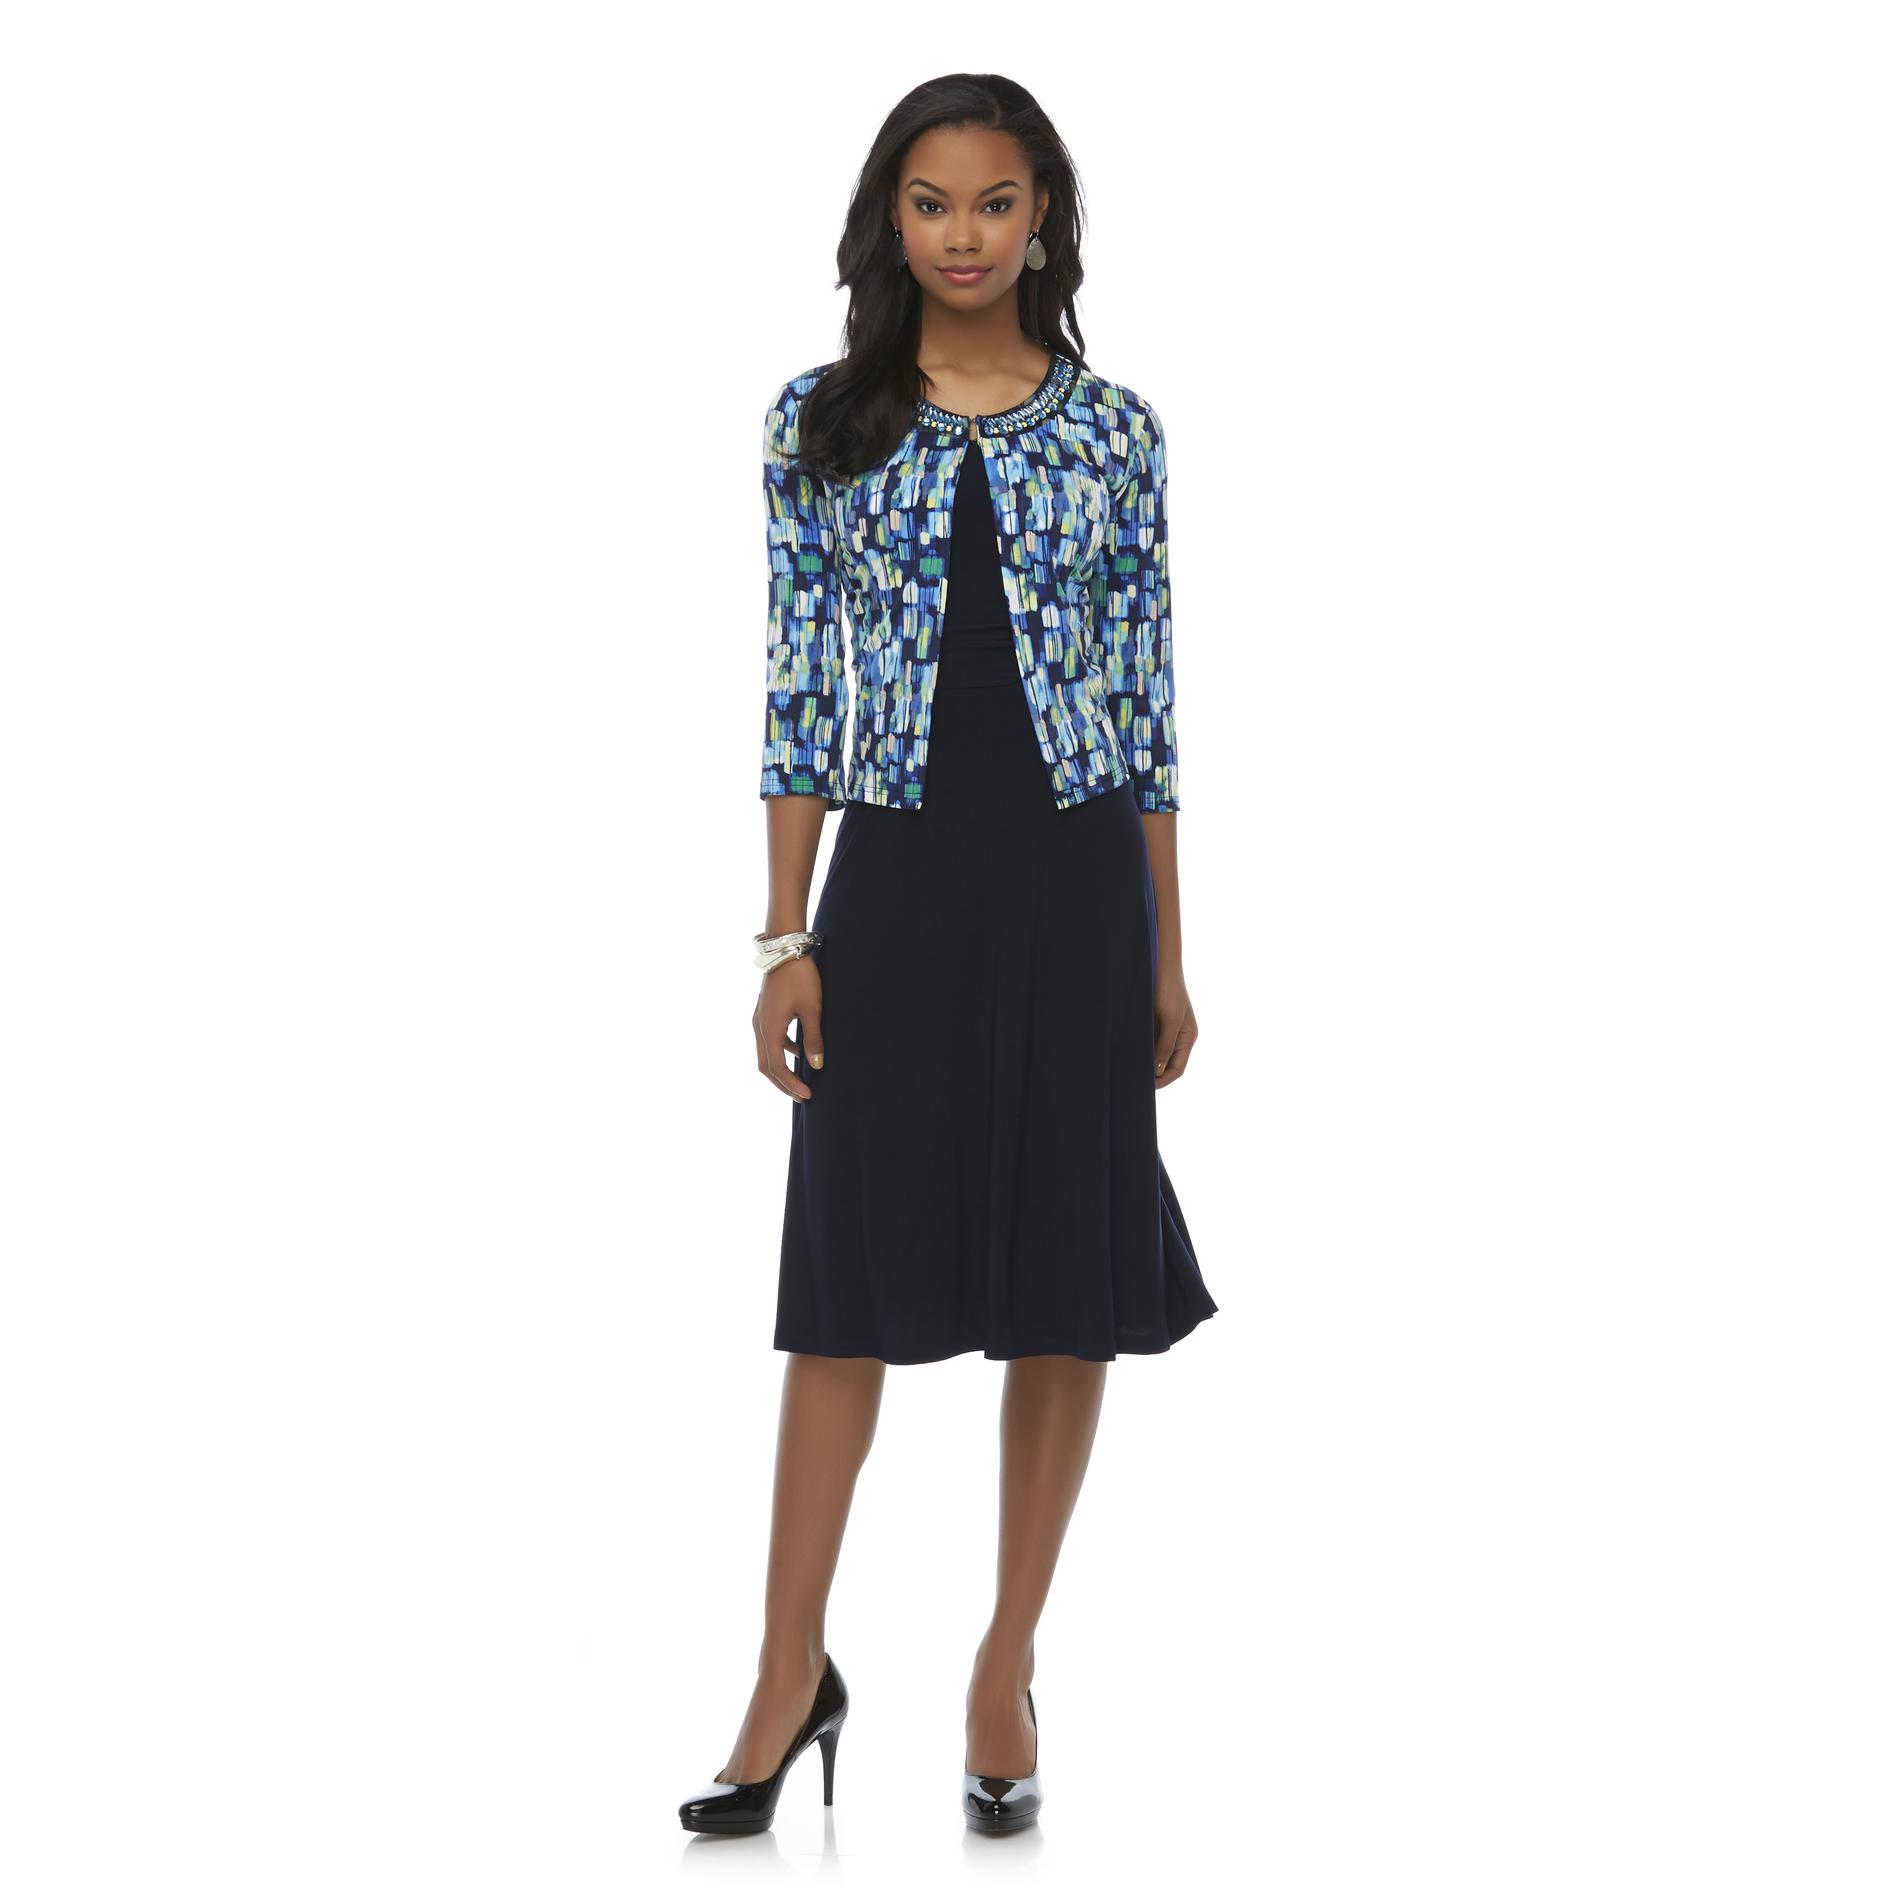 Covington Women's A-Line Dress & Jeweled Jacket - Mosaic